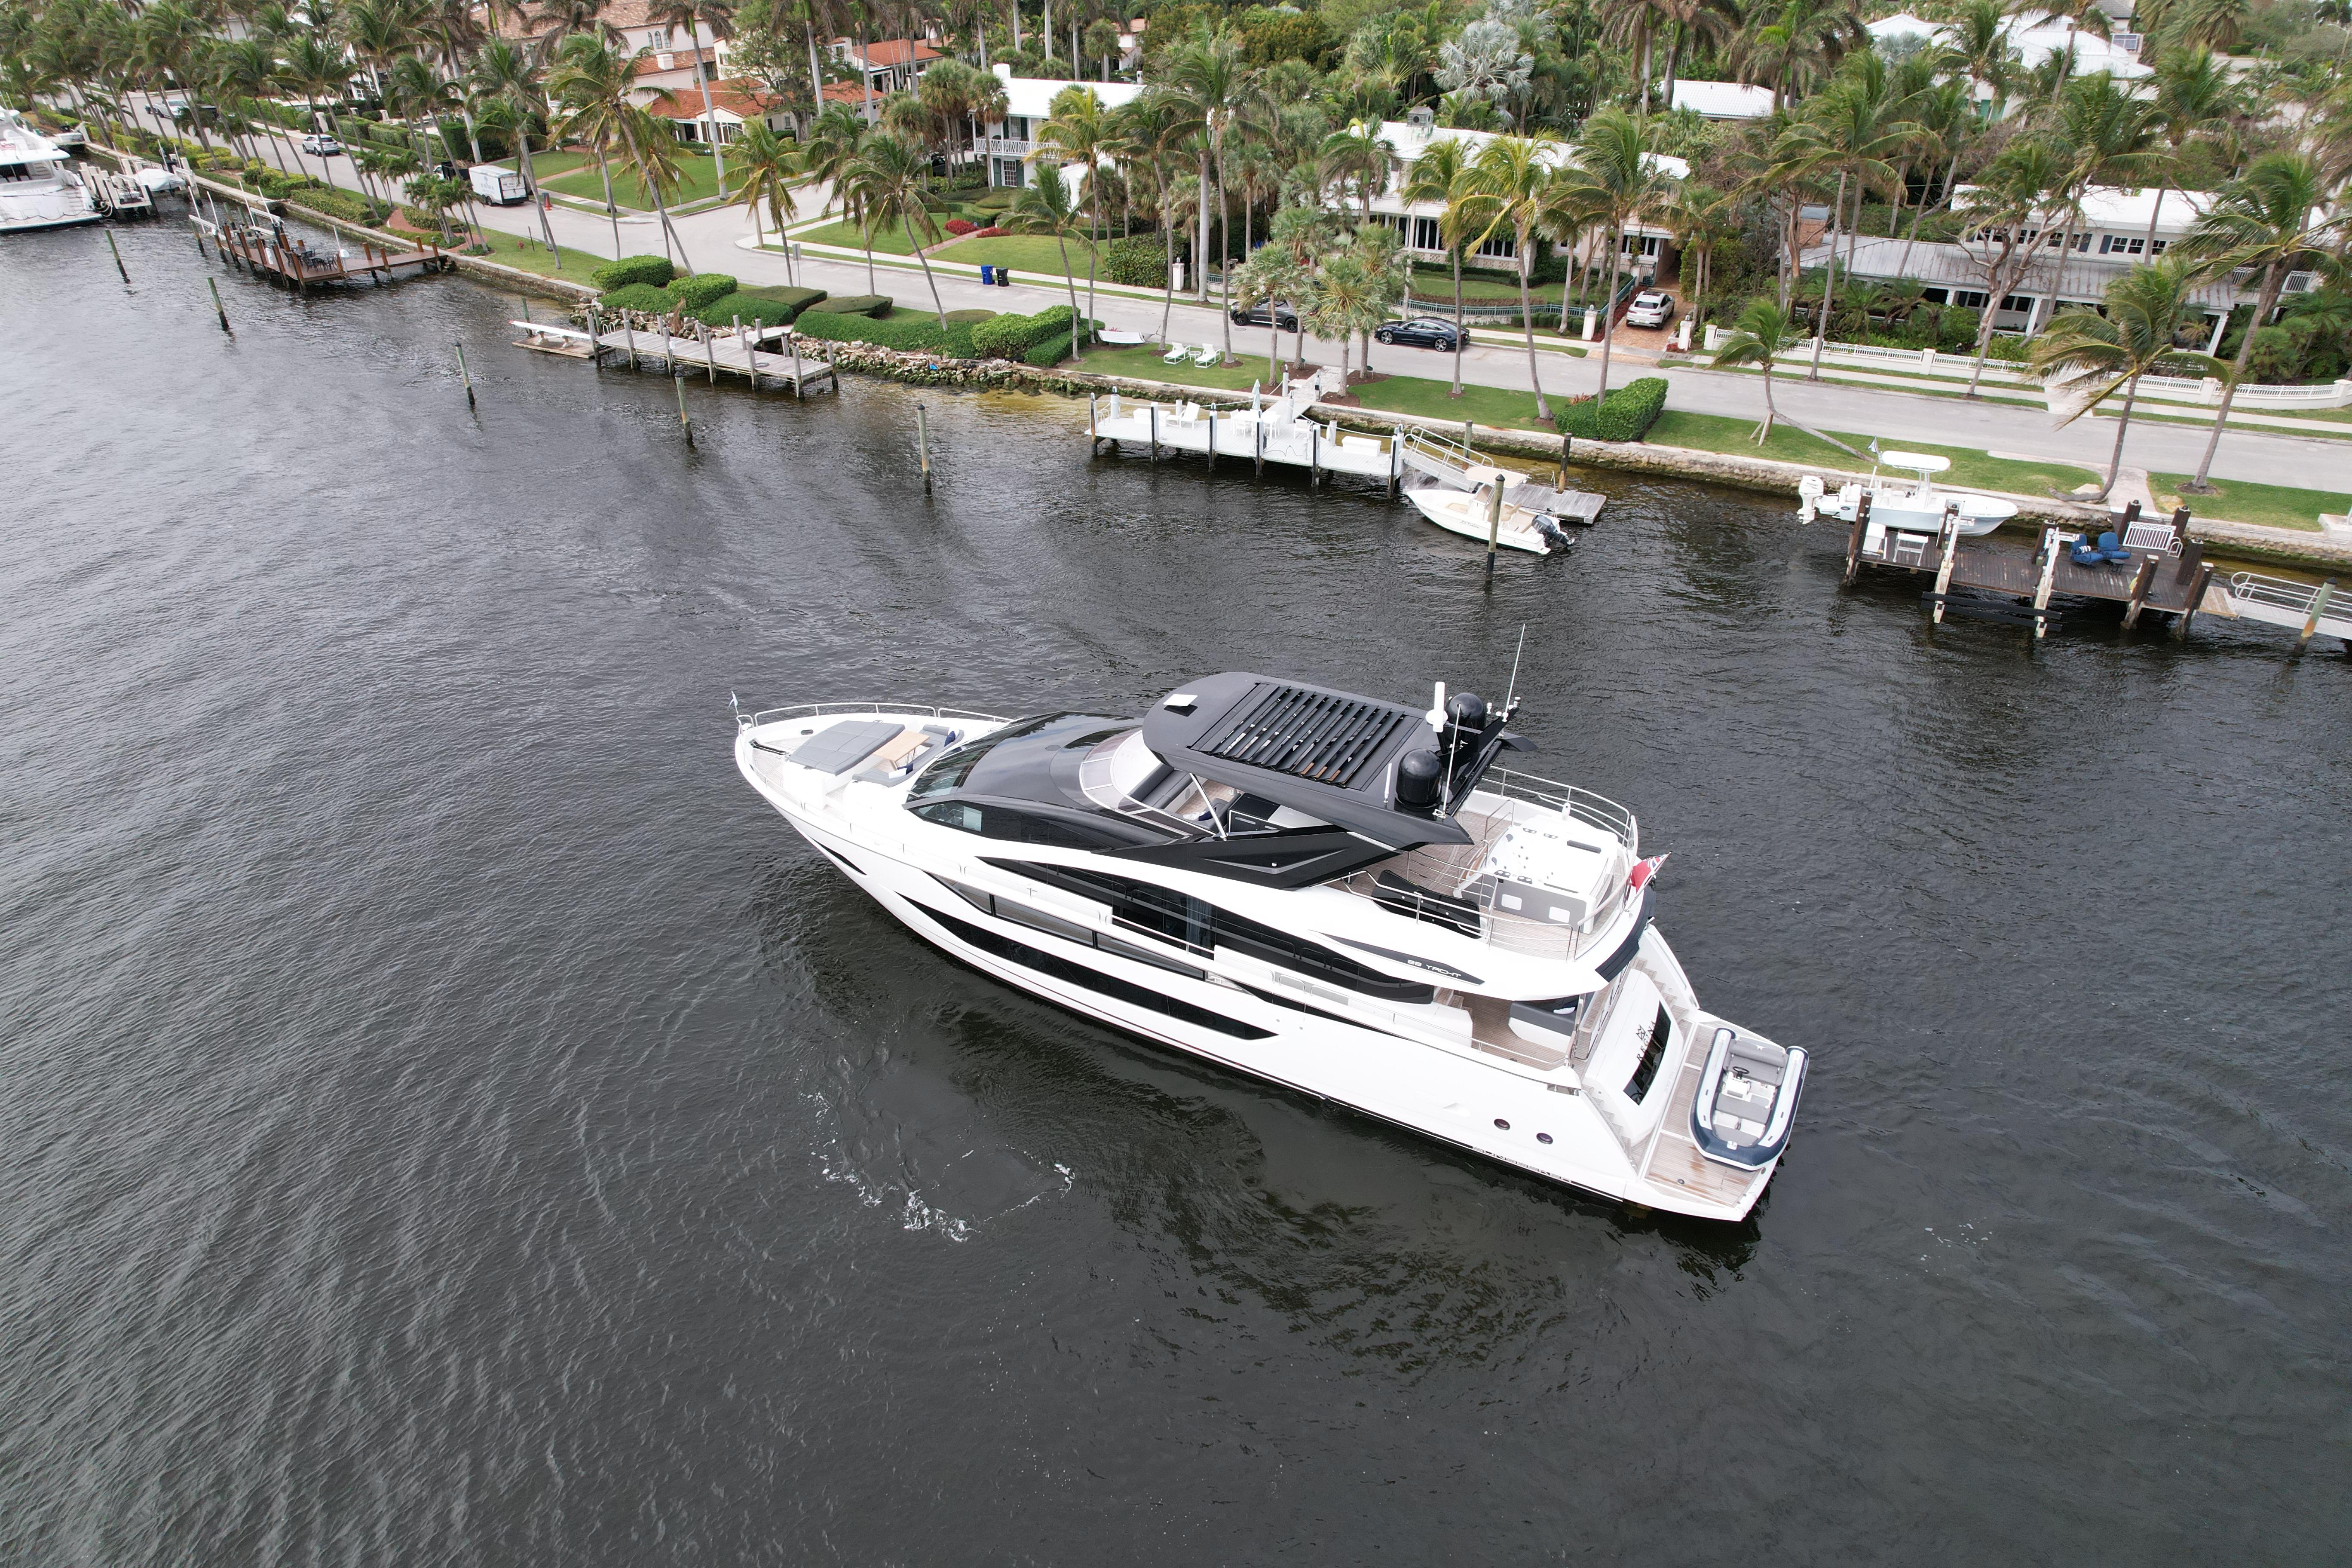 2022 Palm Beach 88 yacht